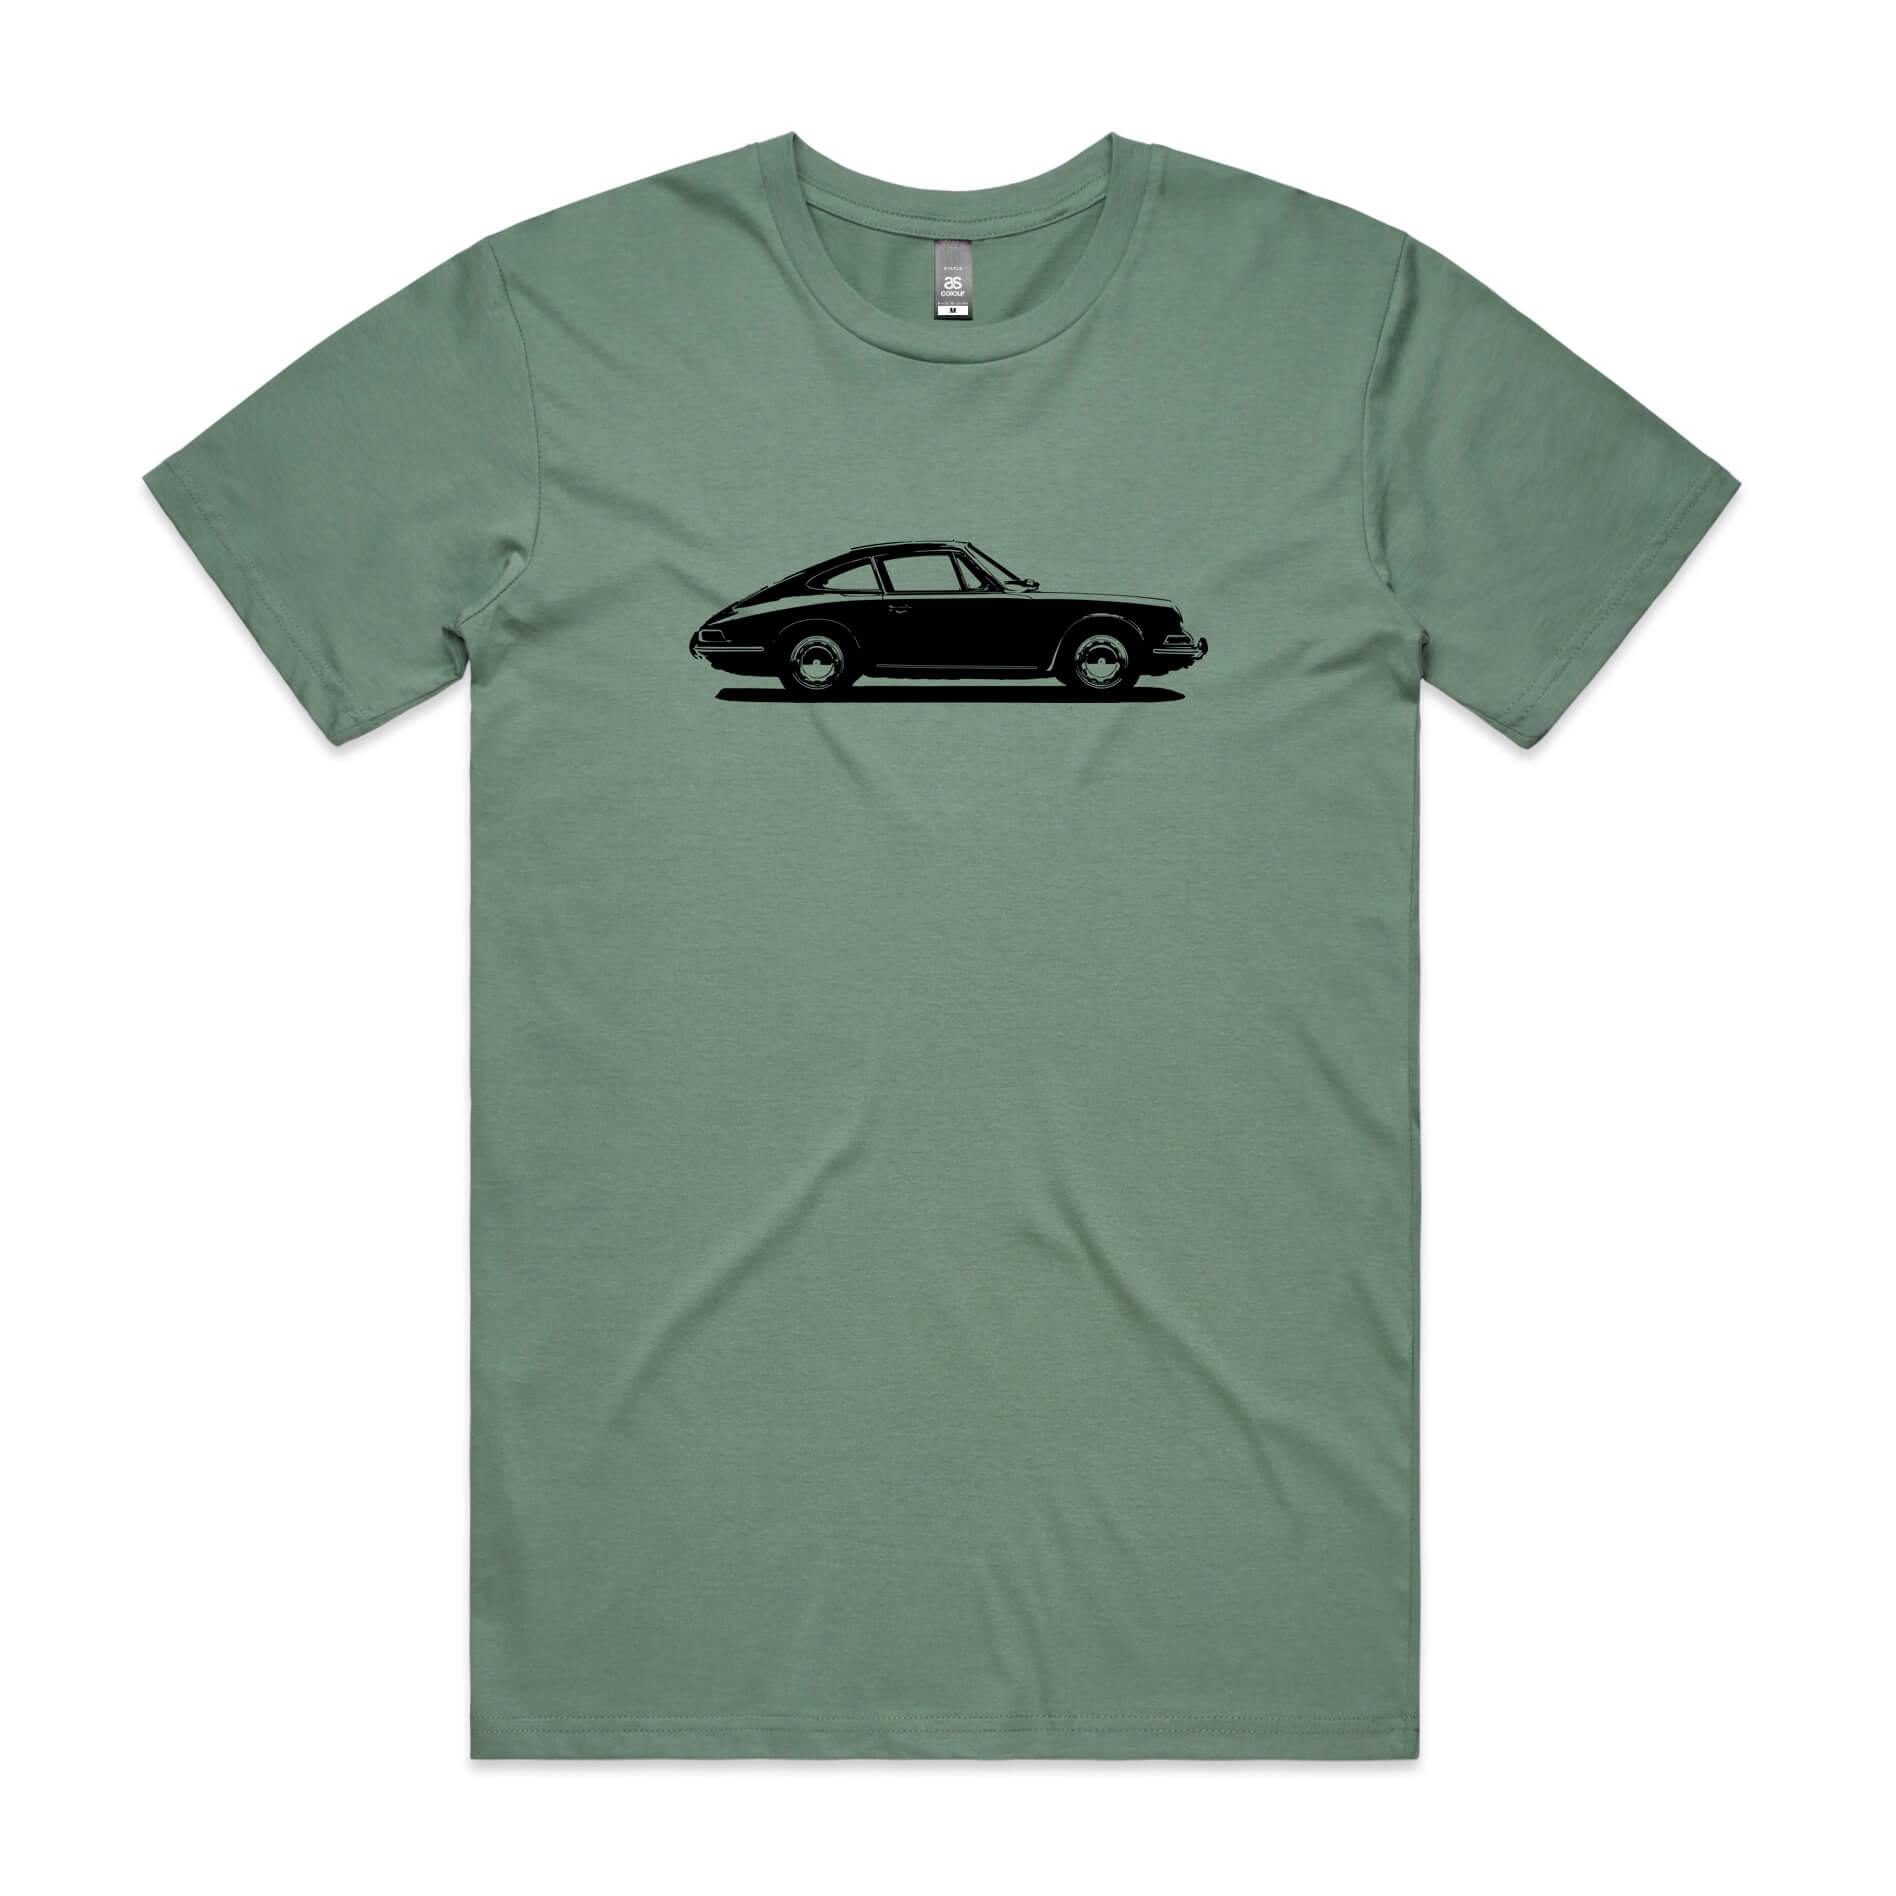 Retro Porsche 911 1965 print on sage green t-shirt